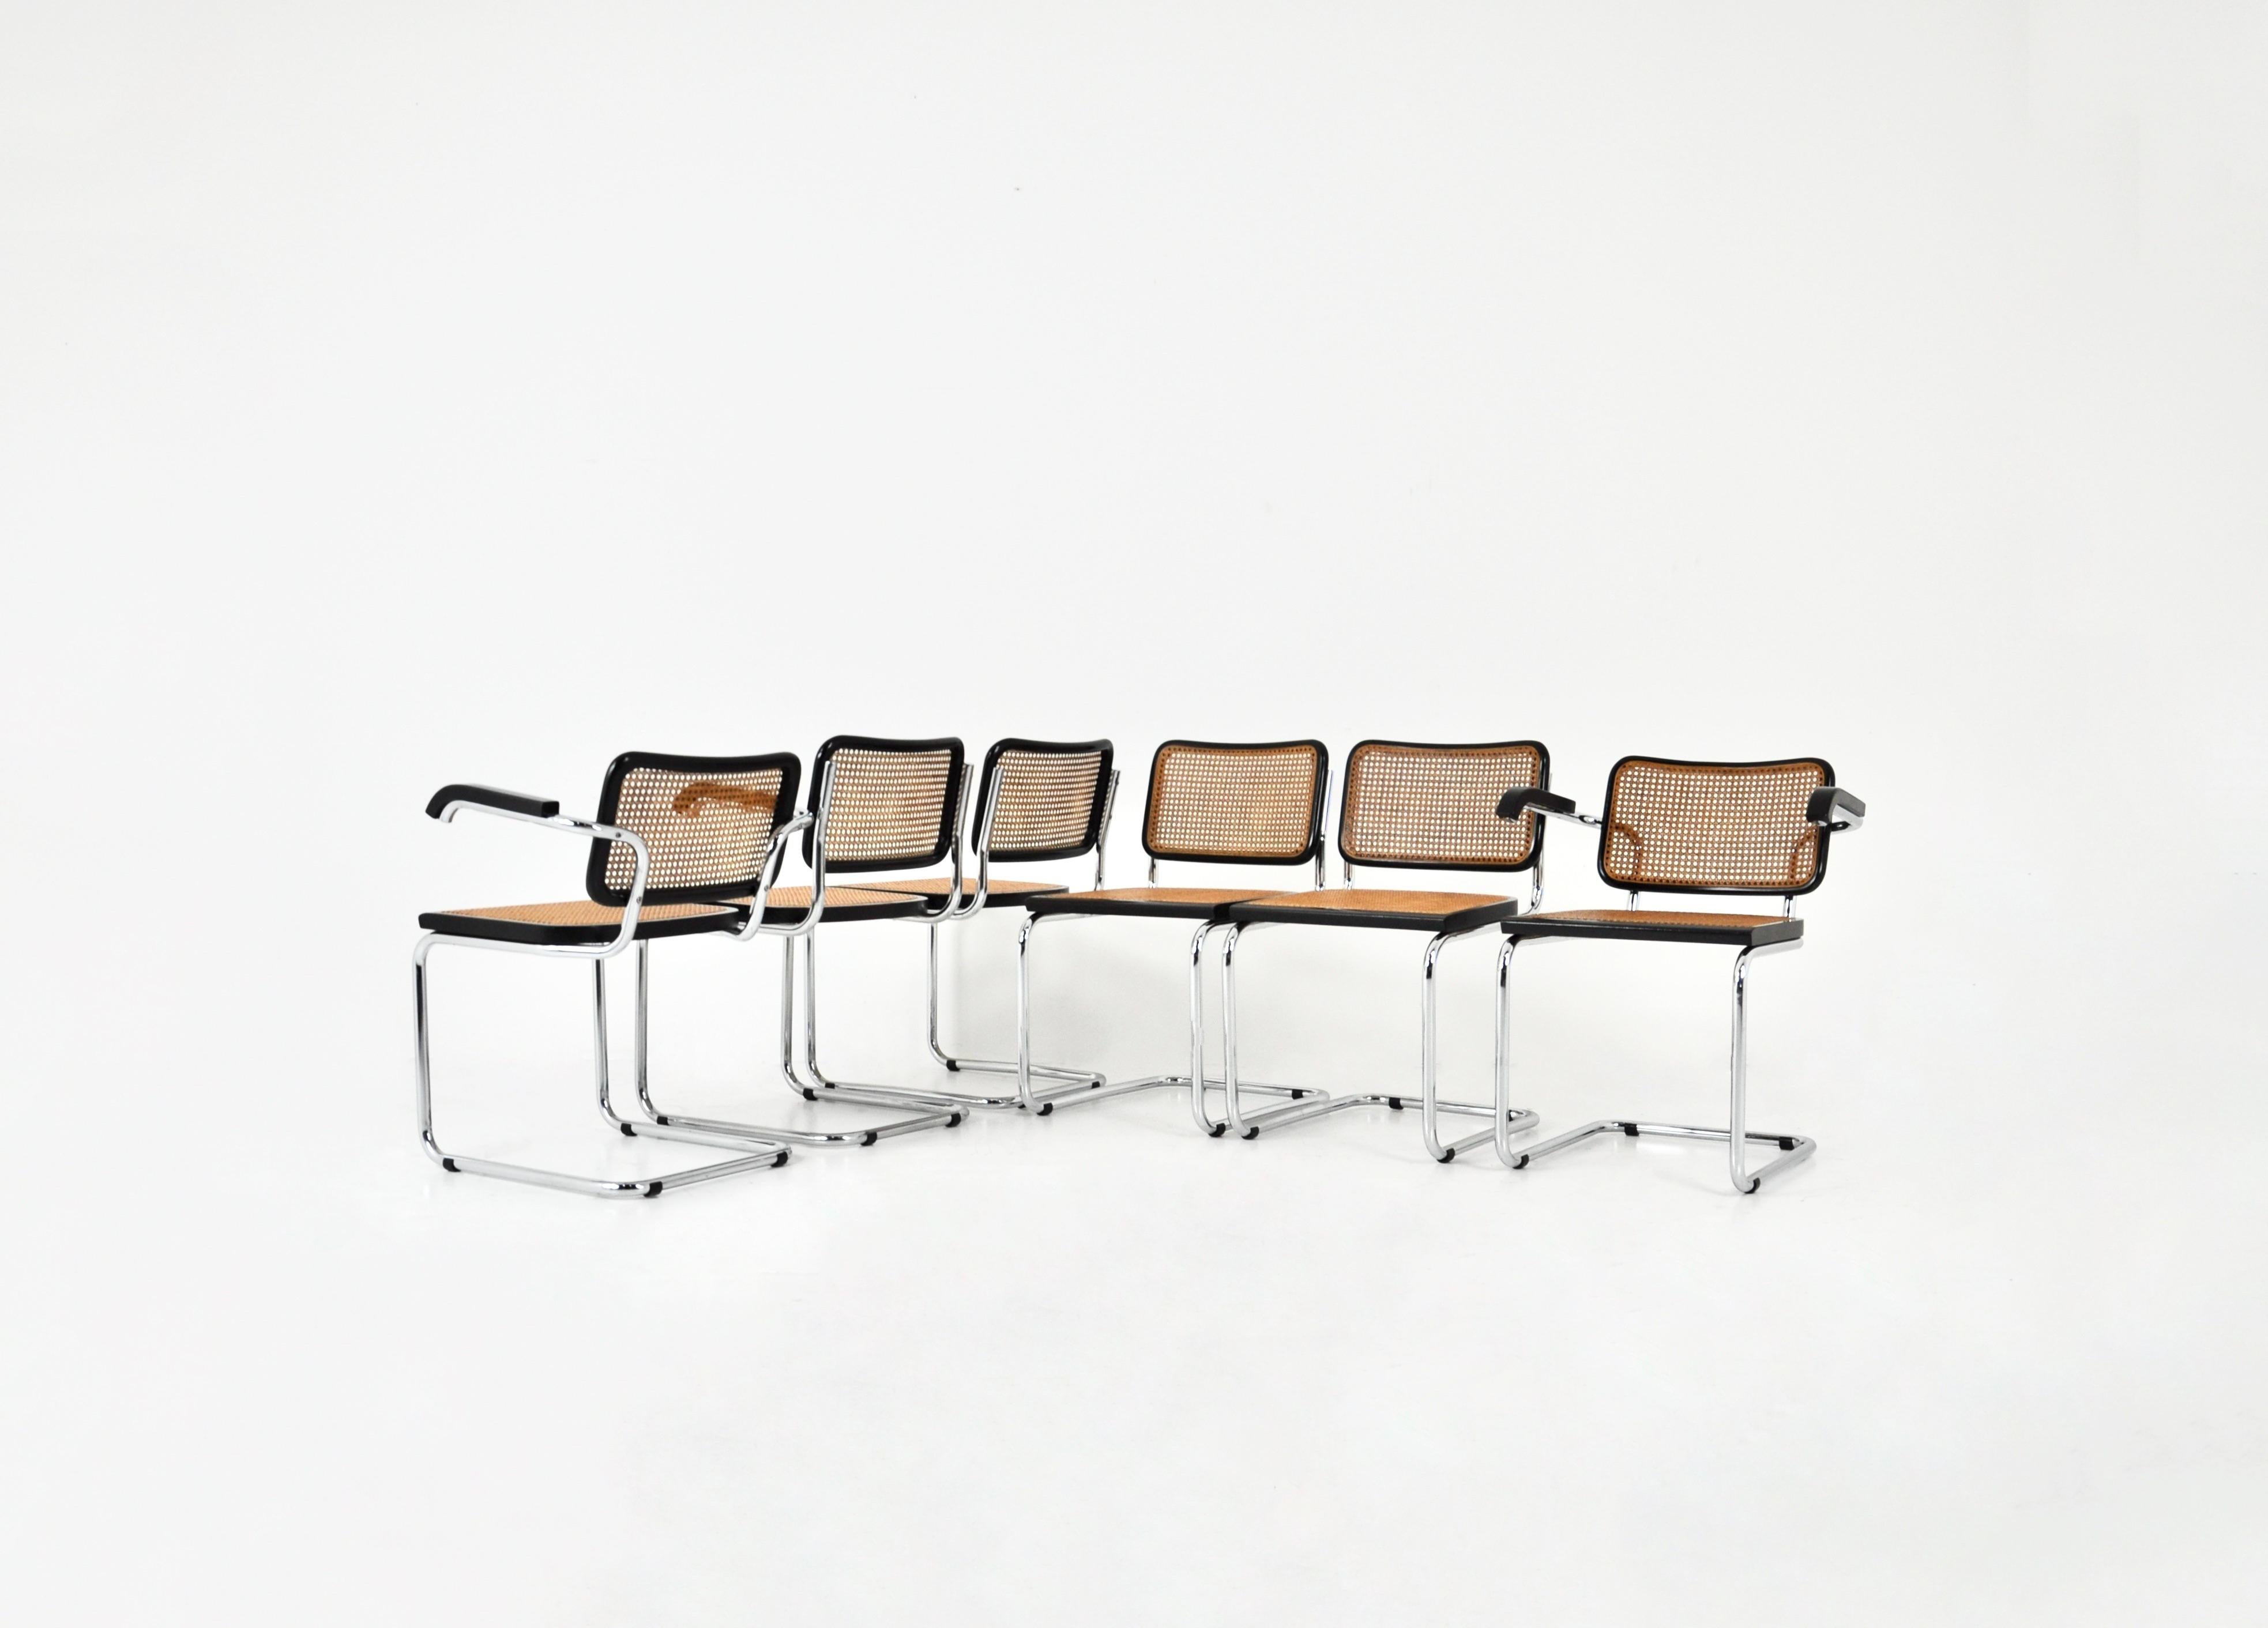 Set aus 6 Stühlen aus Metall, Holz und Rattan. 2 mit Armlehnen und 4 ohne Armlehnen. 
Abmessungen: Sitzhöhe: 47 cm. Breite mit Armlehnen: 62 cm 
Abnutzung durch die Zeit und das Alter der Stühle. 


